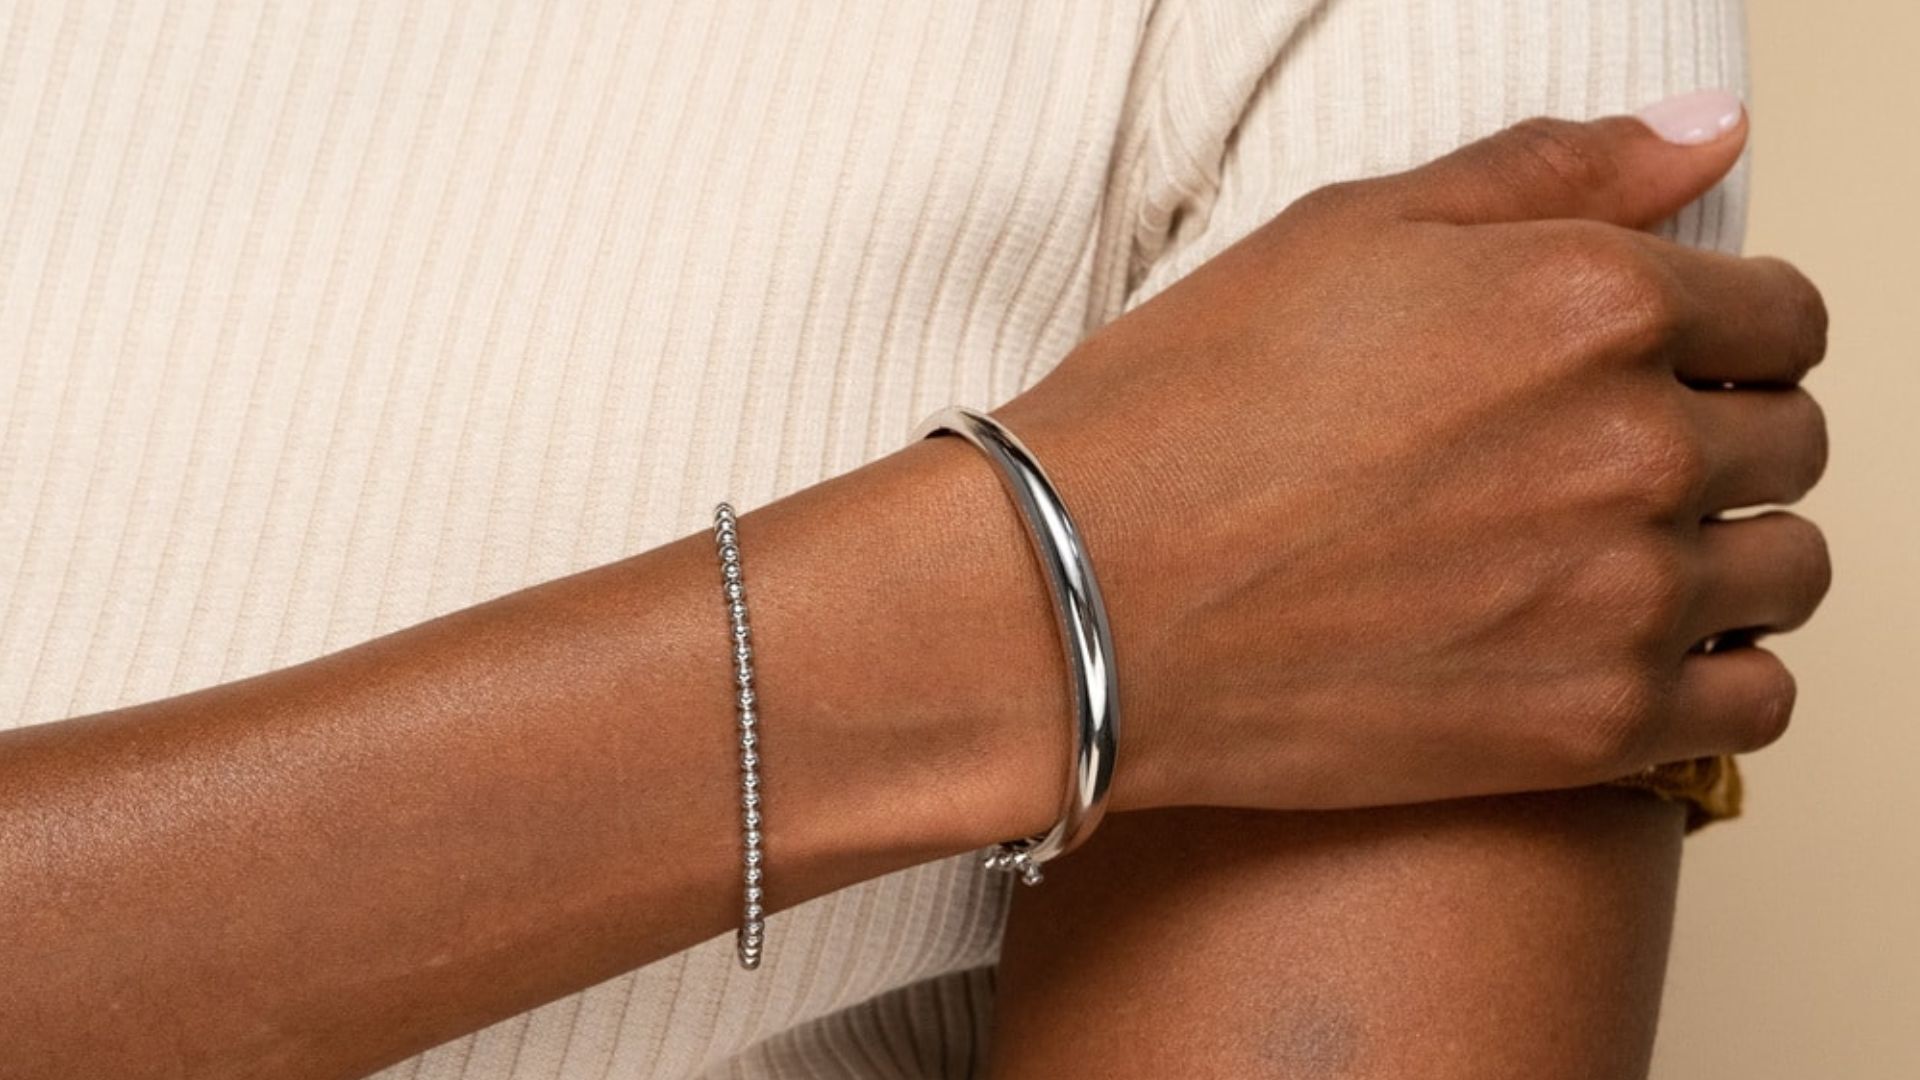 Women Wearing Silver Bracelet